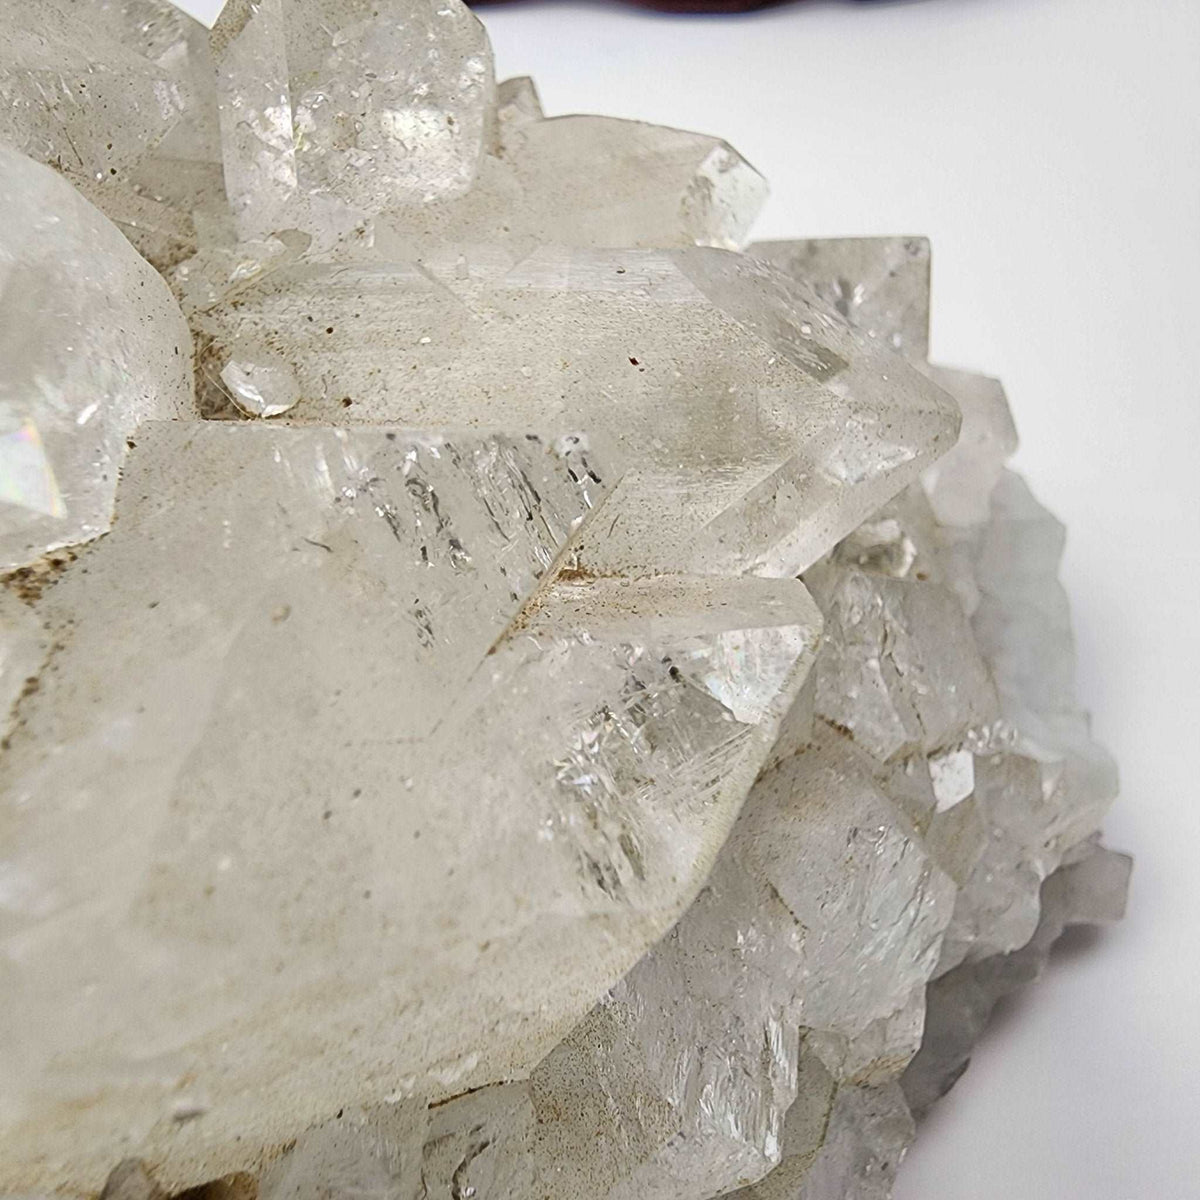 Apophyllite Crystal Cluster | 1.04kg | India